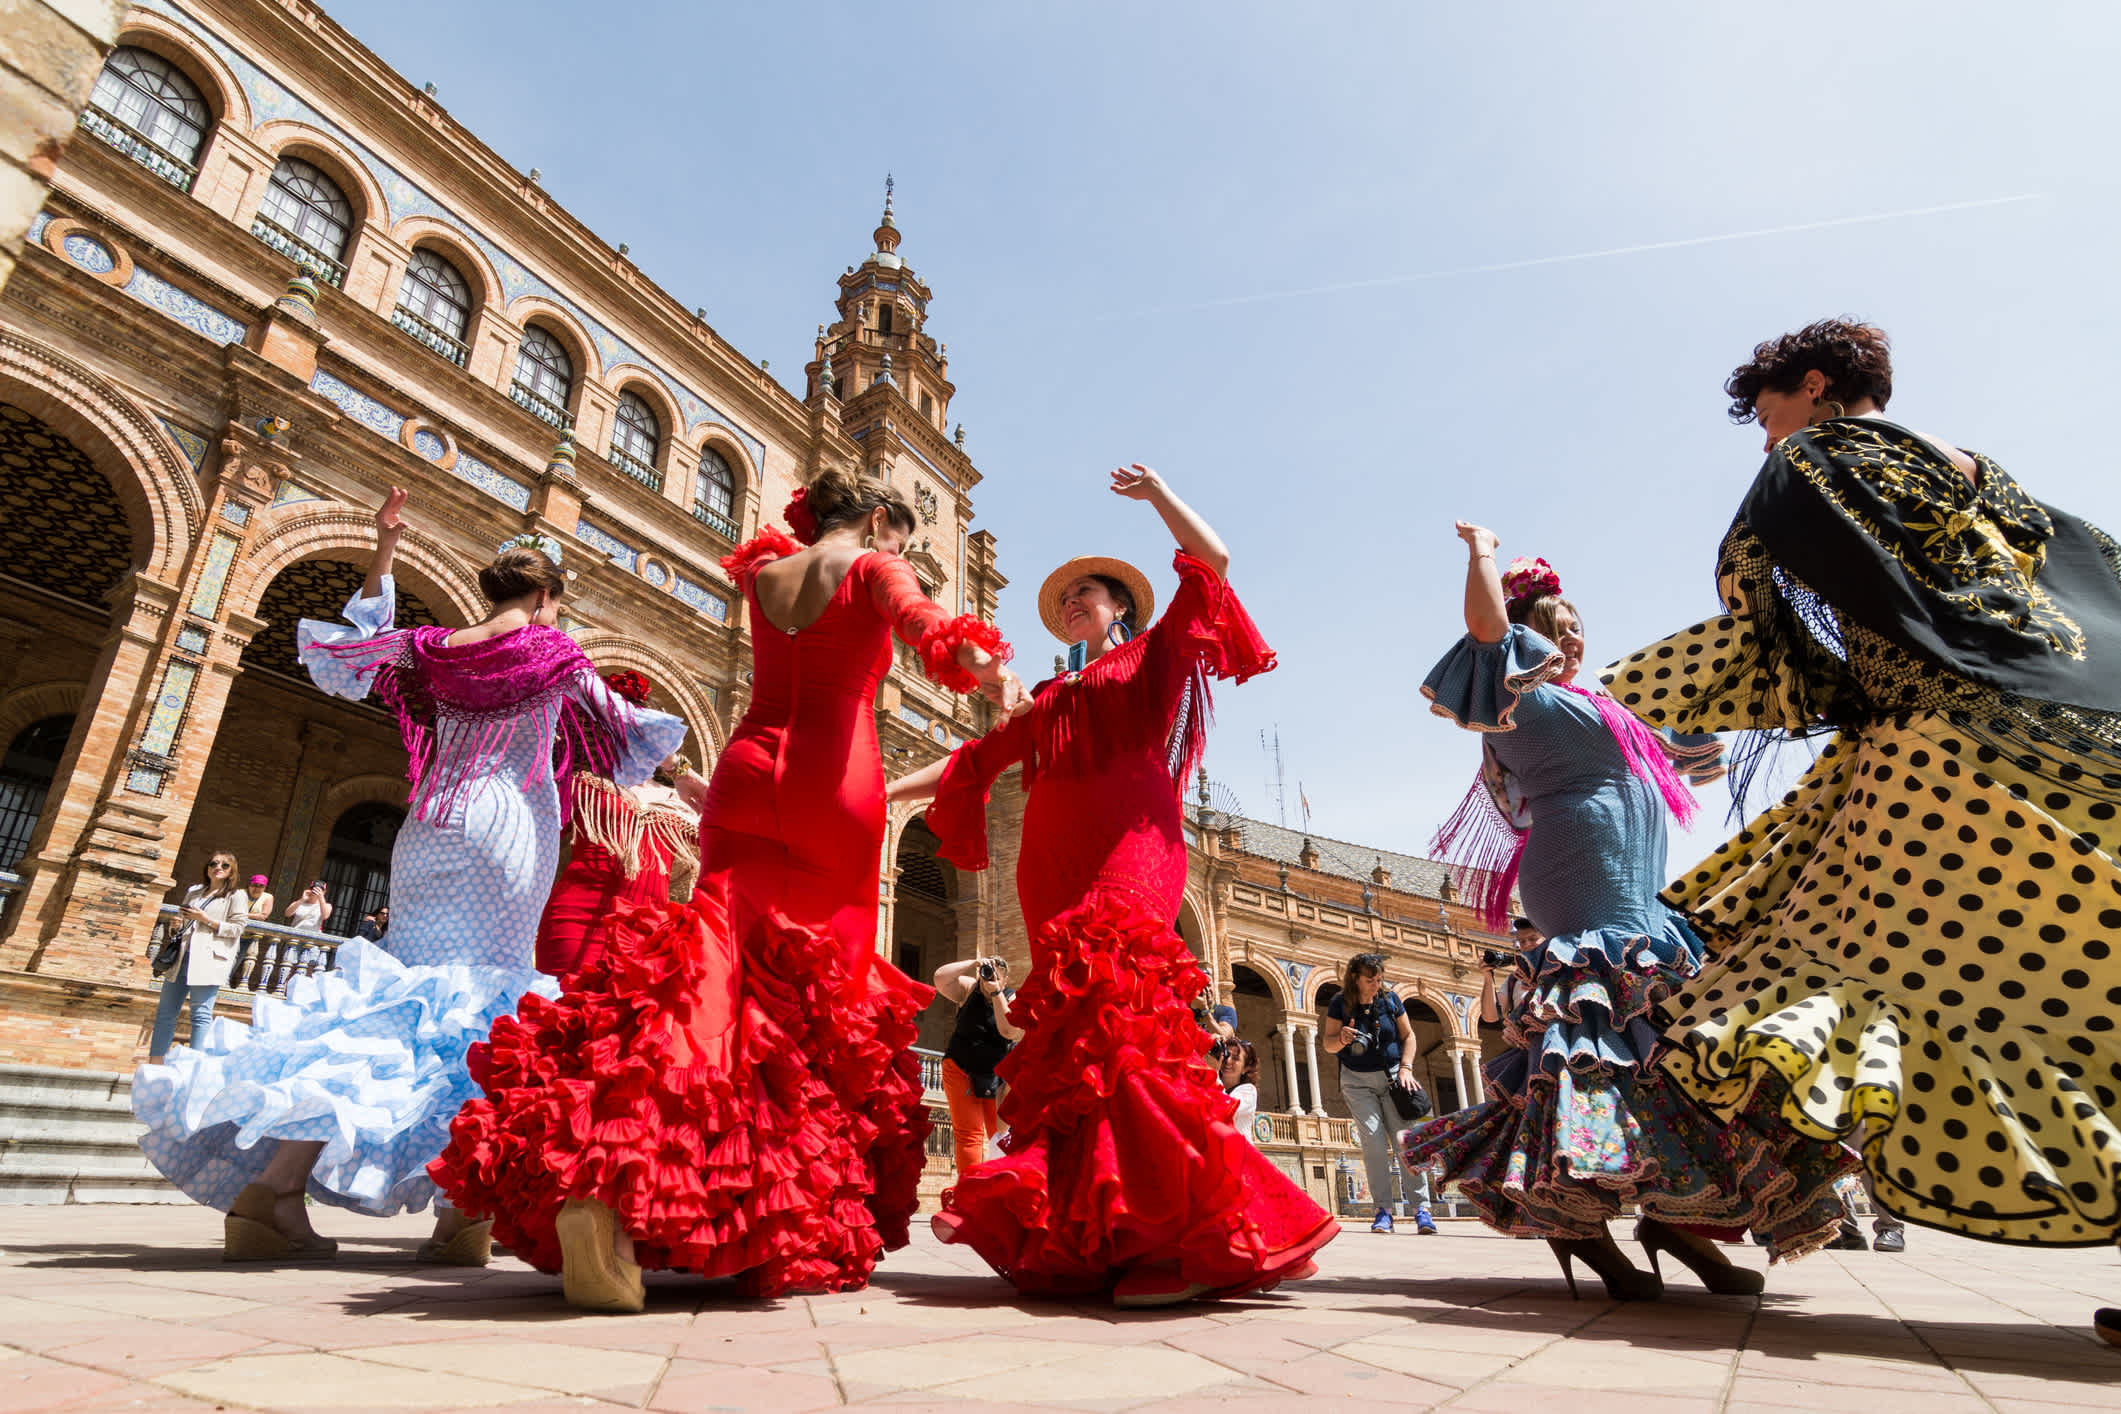 Événement traditionnel en Espagne : Les Férias. Une expérience inoubliable lors d'un voyage en Espagne.